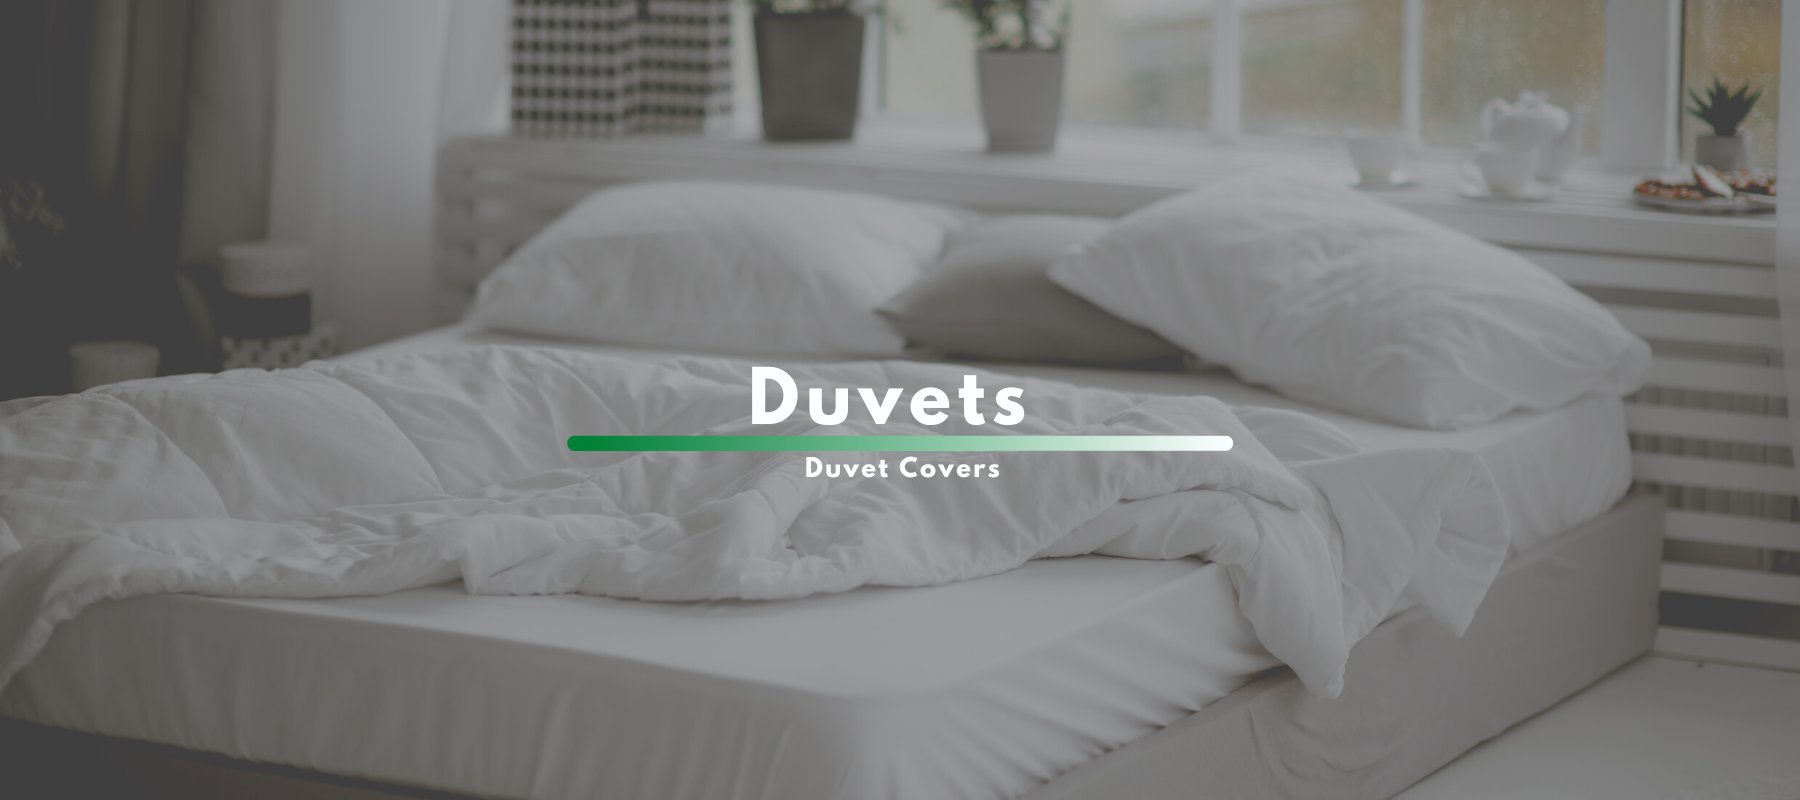 Duvet and Duvet Covers